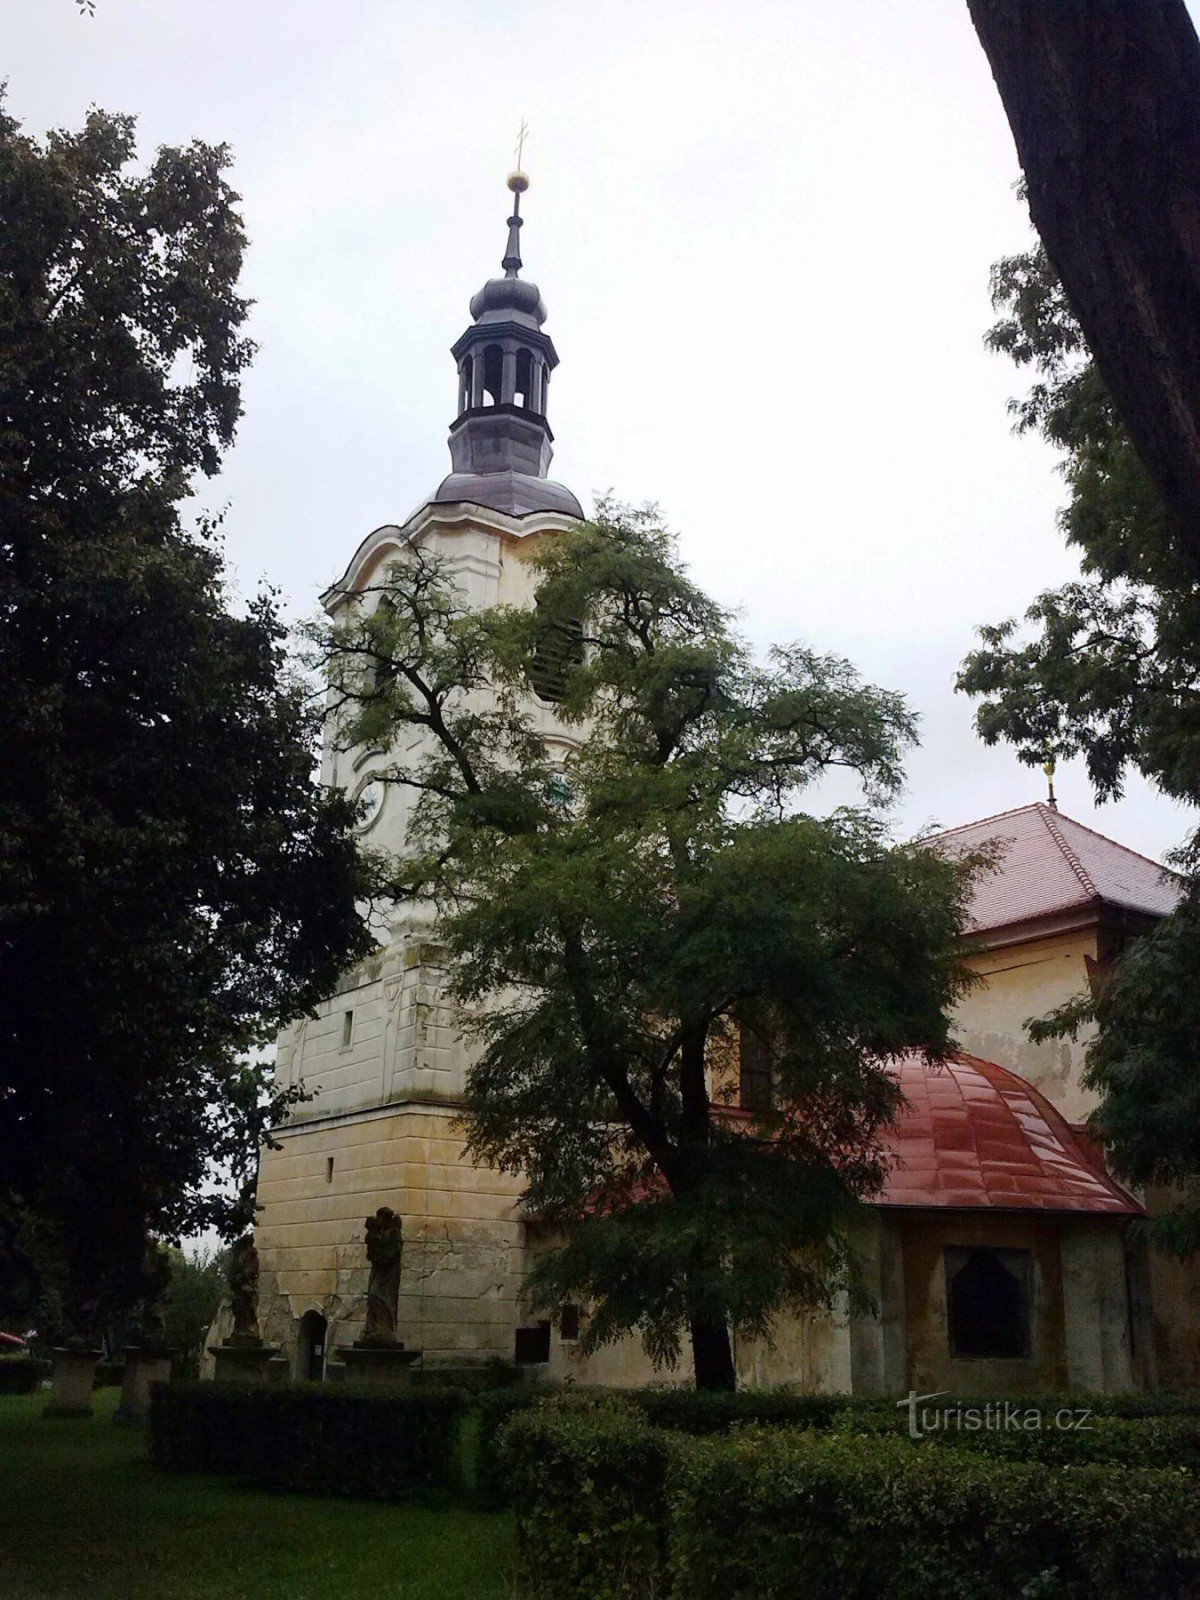 1. Nhà thờ Thánh Martin và Lễ viếng Đức Mẹ Đồng Trinh ở Liběšice